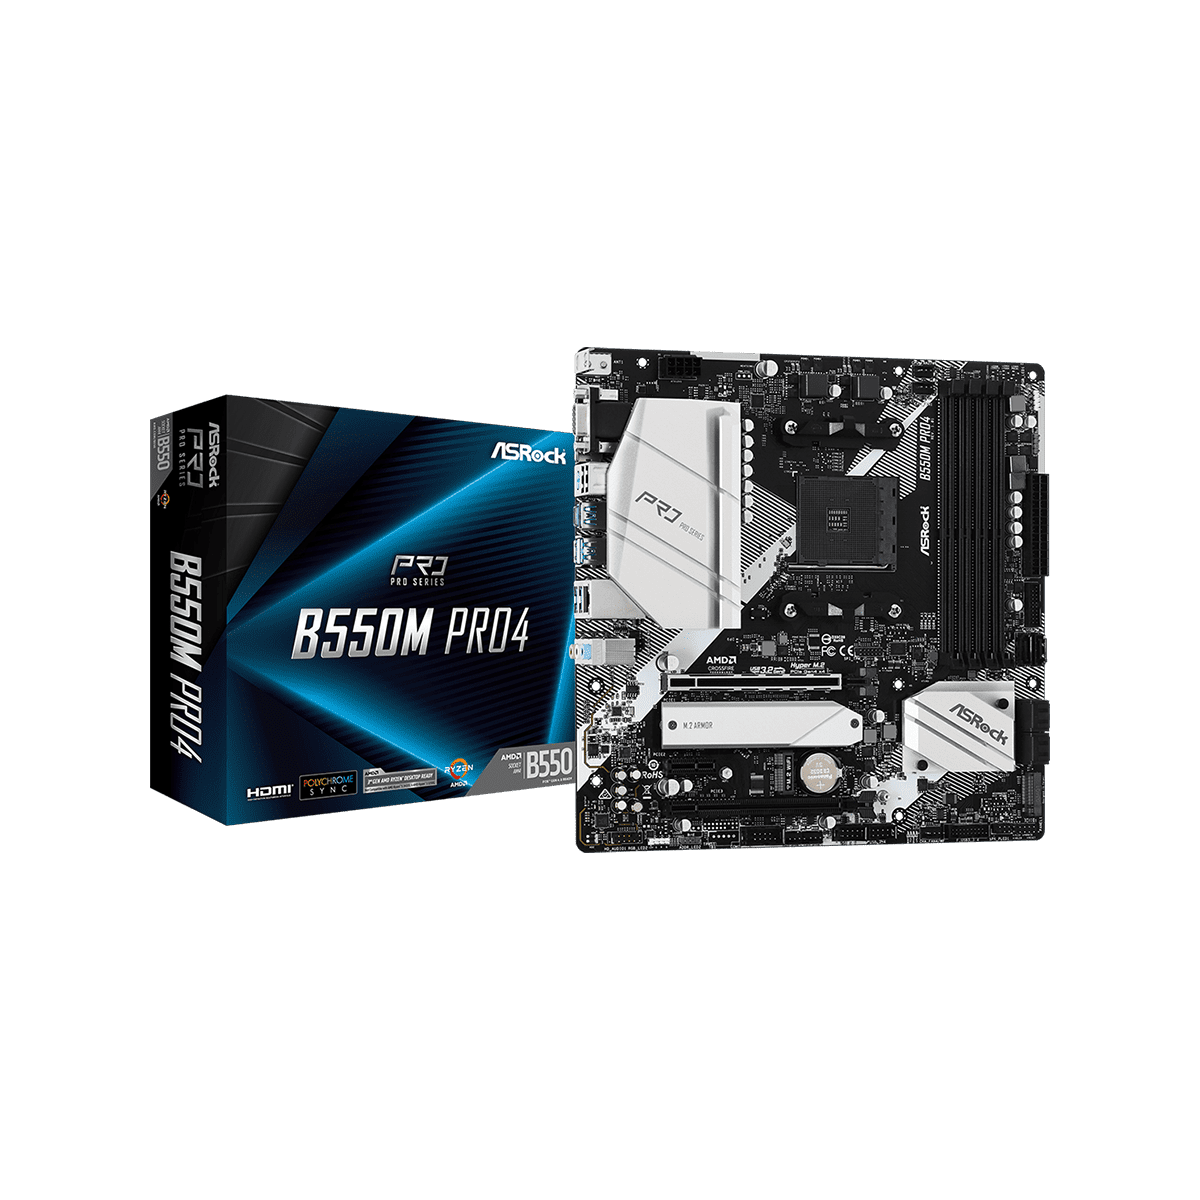 ASRock Socket AM4 AMD B550 MicroATX マザーボード B550M Pro4